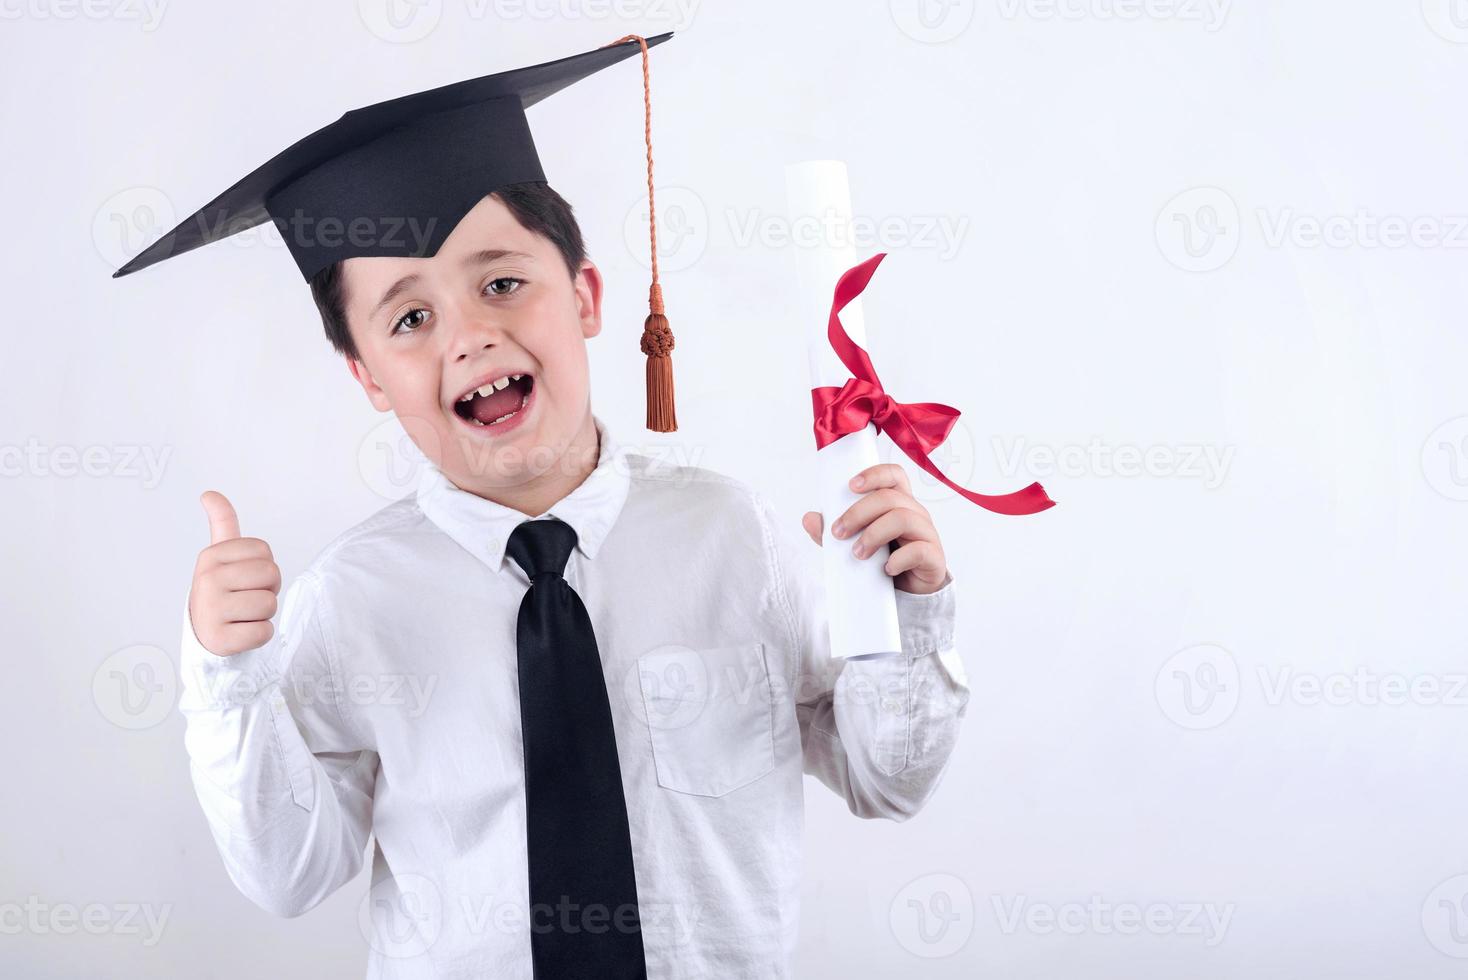 niño sonriente con diploma de graduación foto